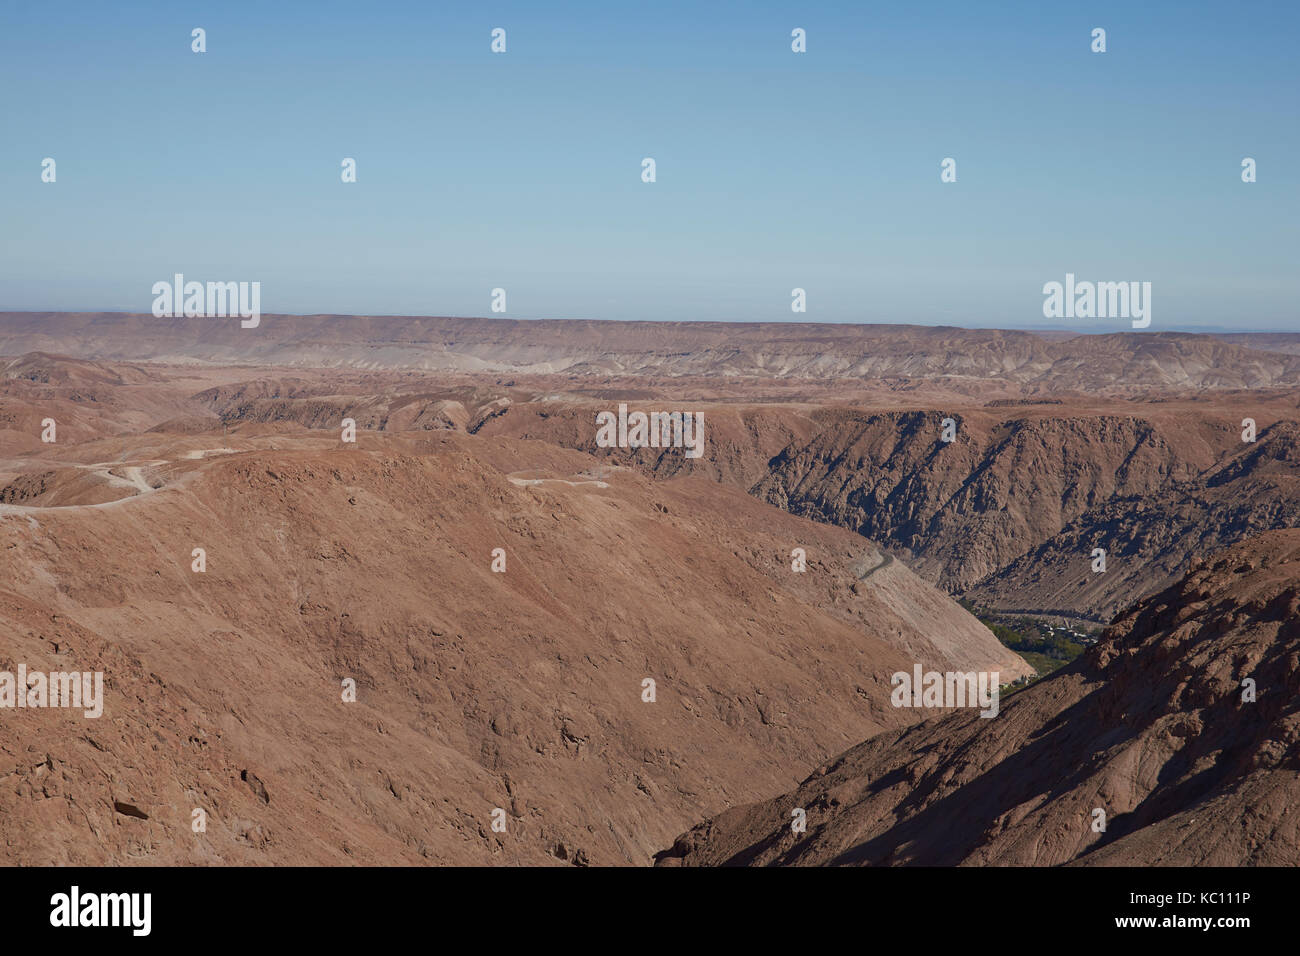 Grand canyon de la rivière qui traverse le désert d'Atacama au arica y parinacota région du nord du Chili. Banque D'Images